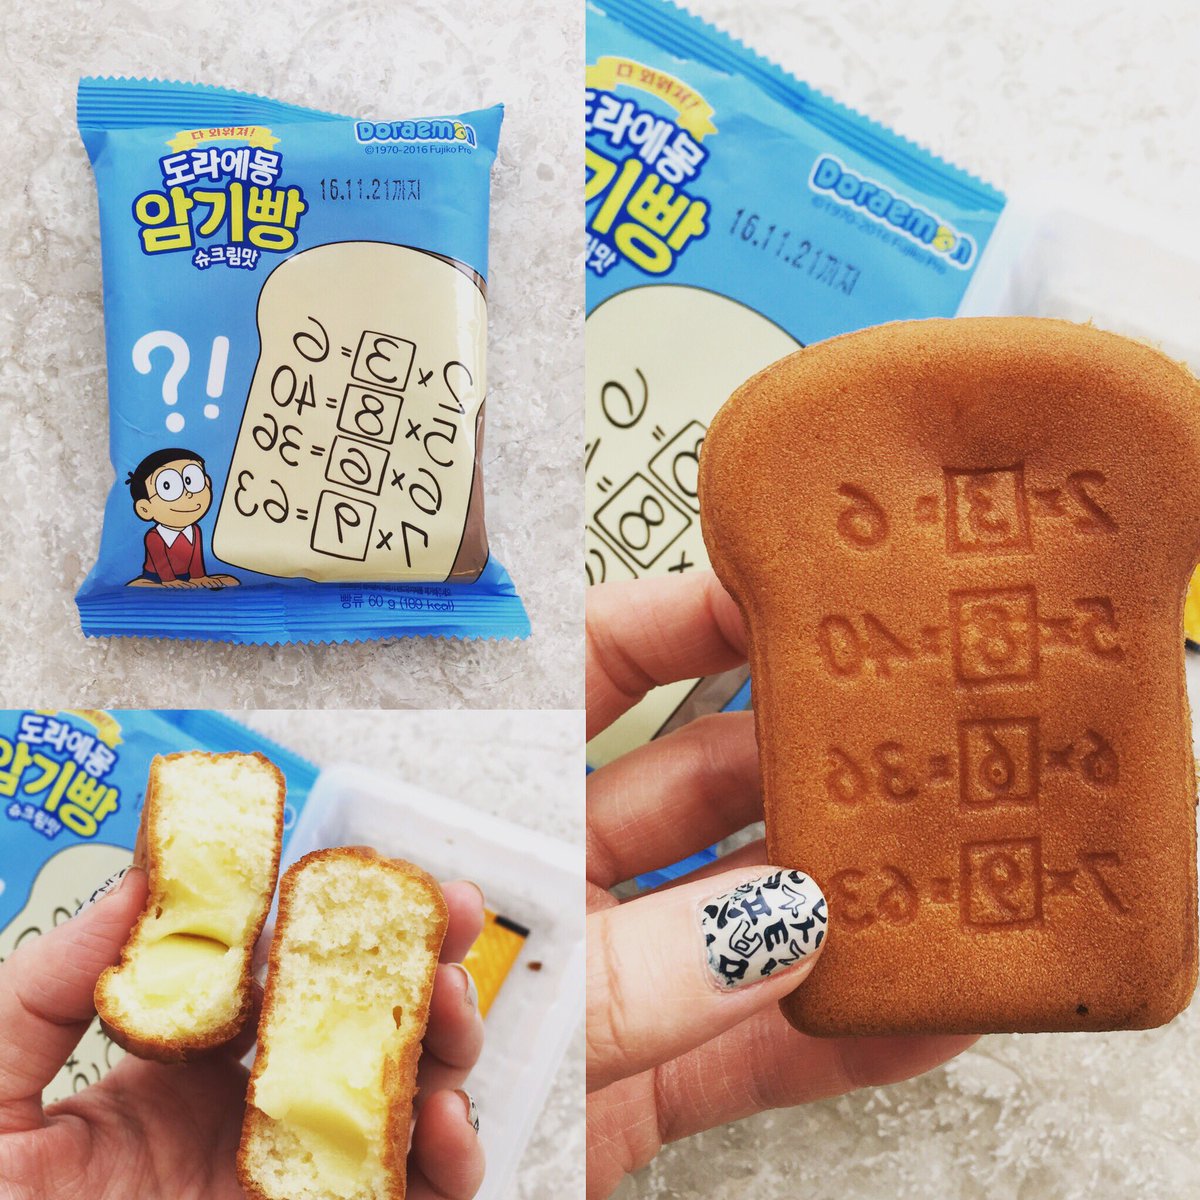 ট ইট র 累計万部突破 Hime式イラストで学ぶ韓国語本 韓国のセブンで見つけた ドラえもんの暗記パン 気になって買って見ました 開けたらビックリ パンと言うか 人形焼的なものでしたよ ま 見た目はかわいいんですが ちょっと